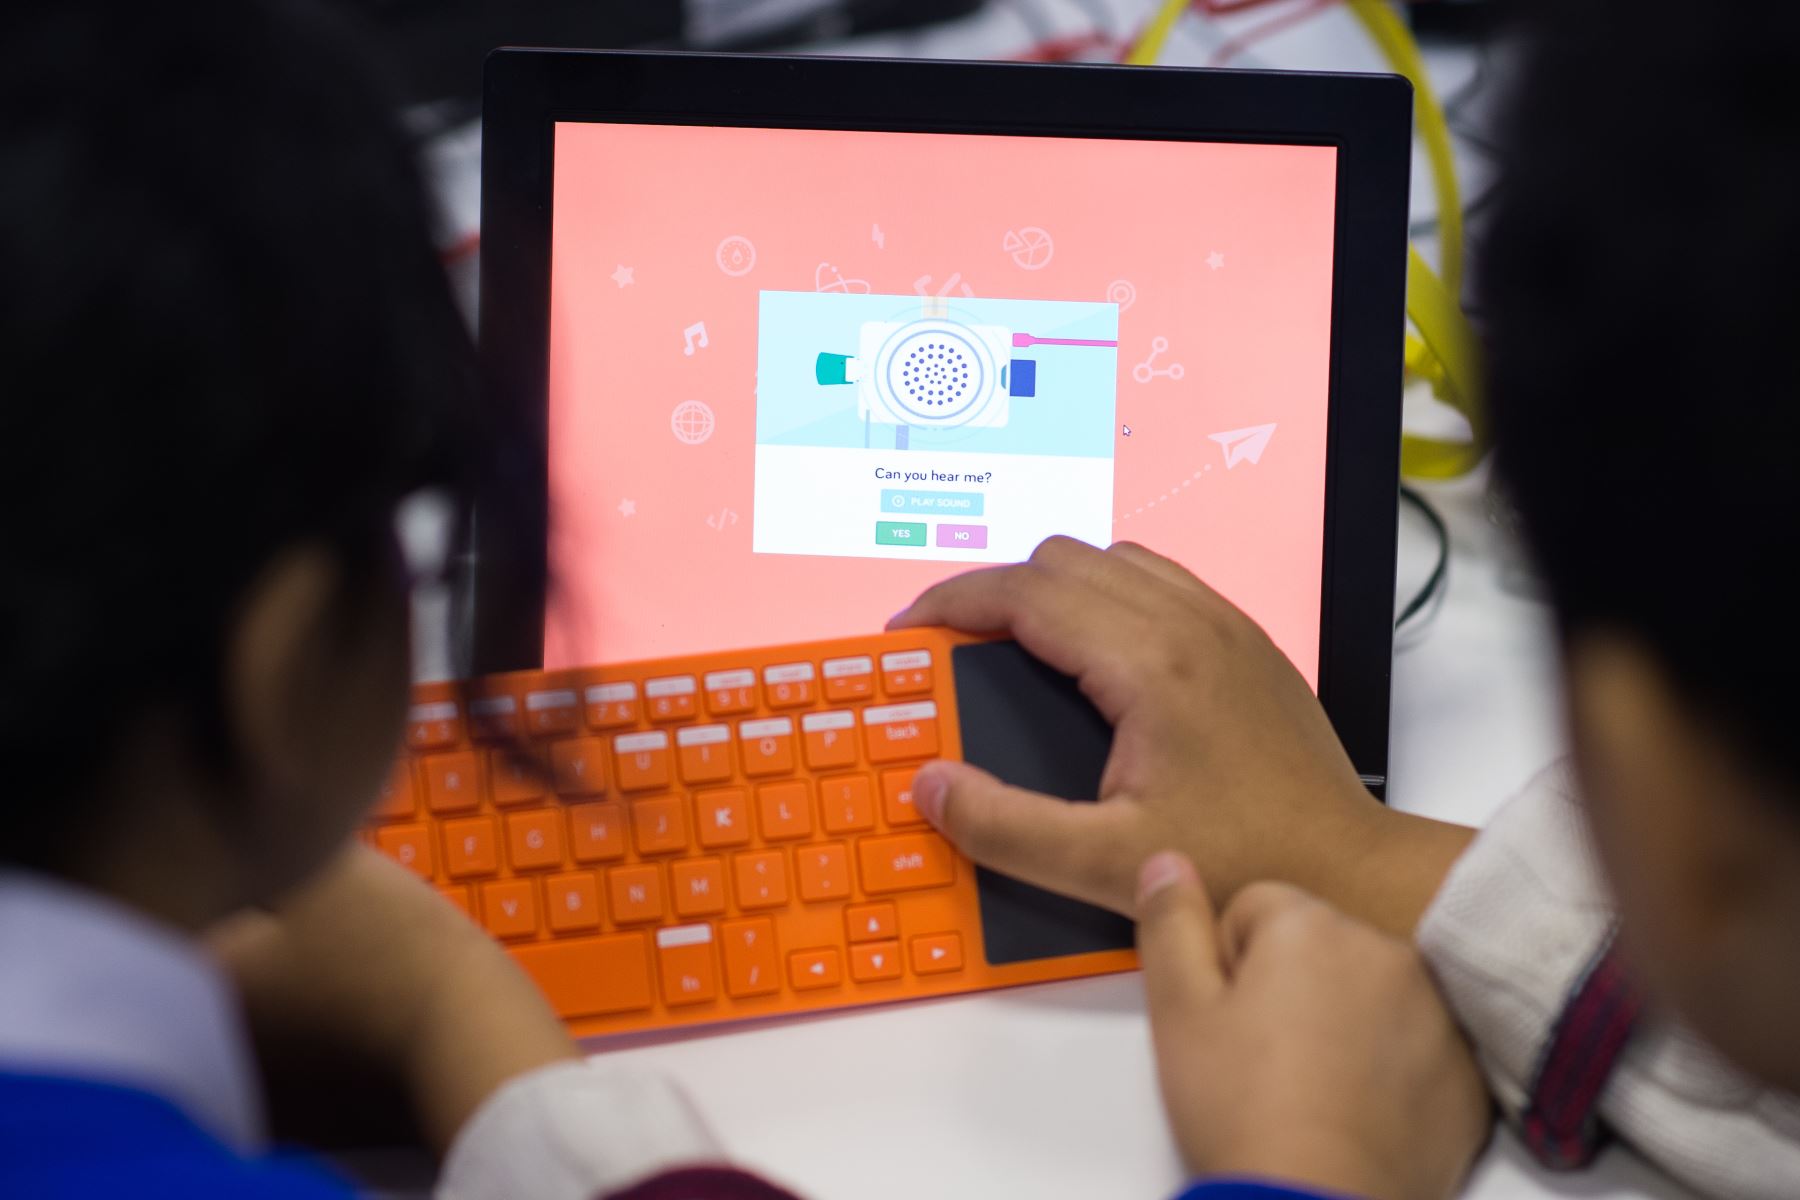 Plataforma de Concytec enlista decenas de recursos en línea para niños y adolescentes en matemáticas, ingeniería y ciencias. Foto: AFP.